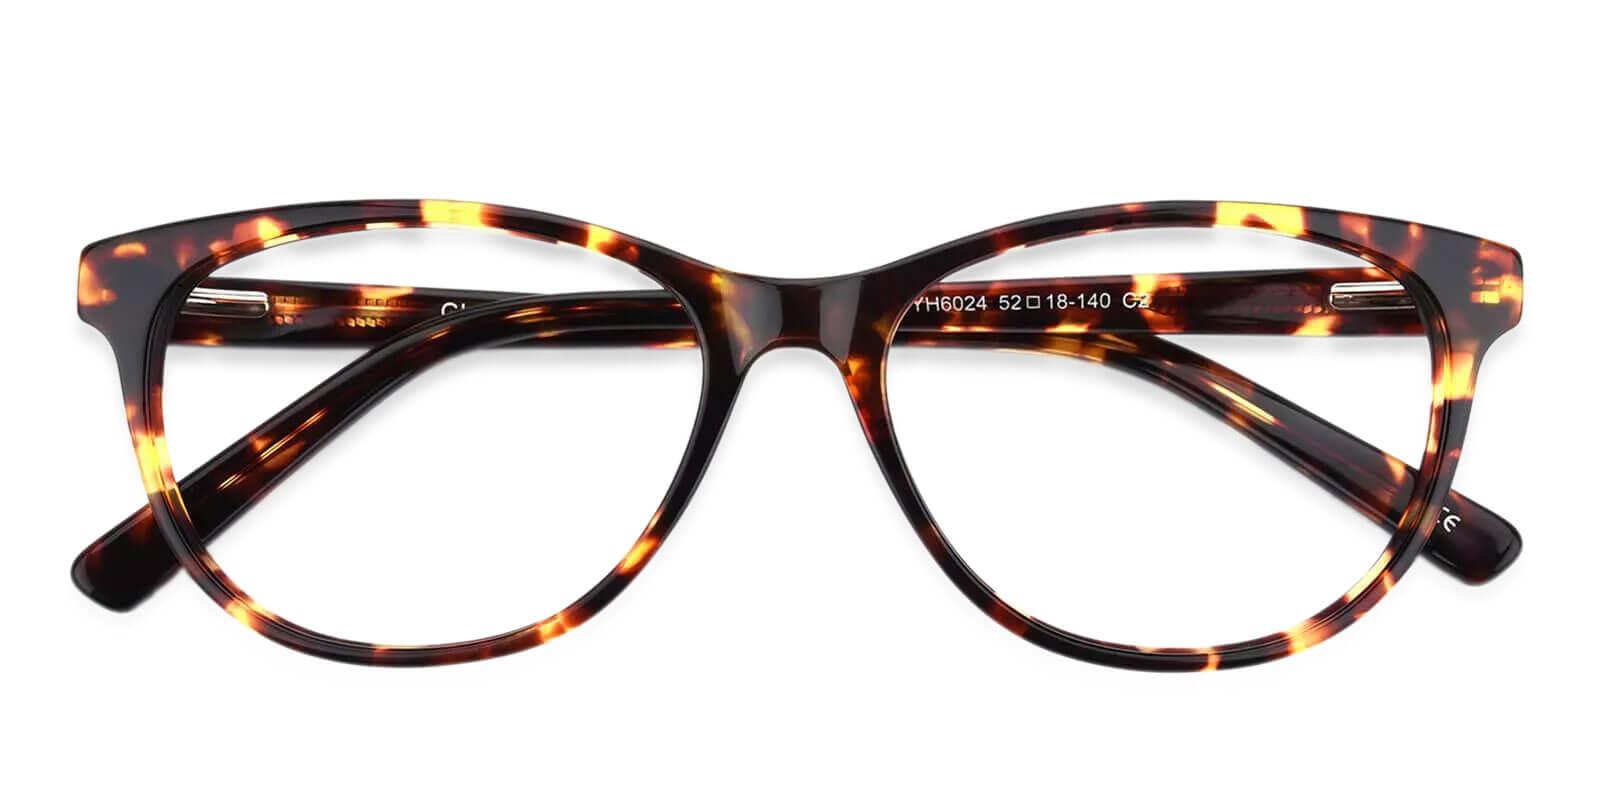 Neptune Pattern Acetate Eyeglasses , SpringHinges , UniversalBridgeFit Frames from ABBE Glasses